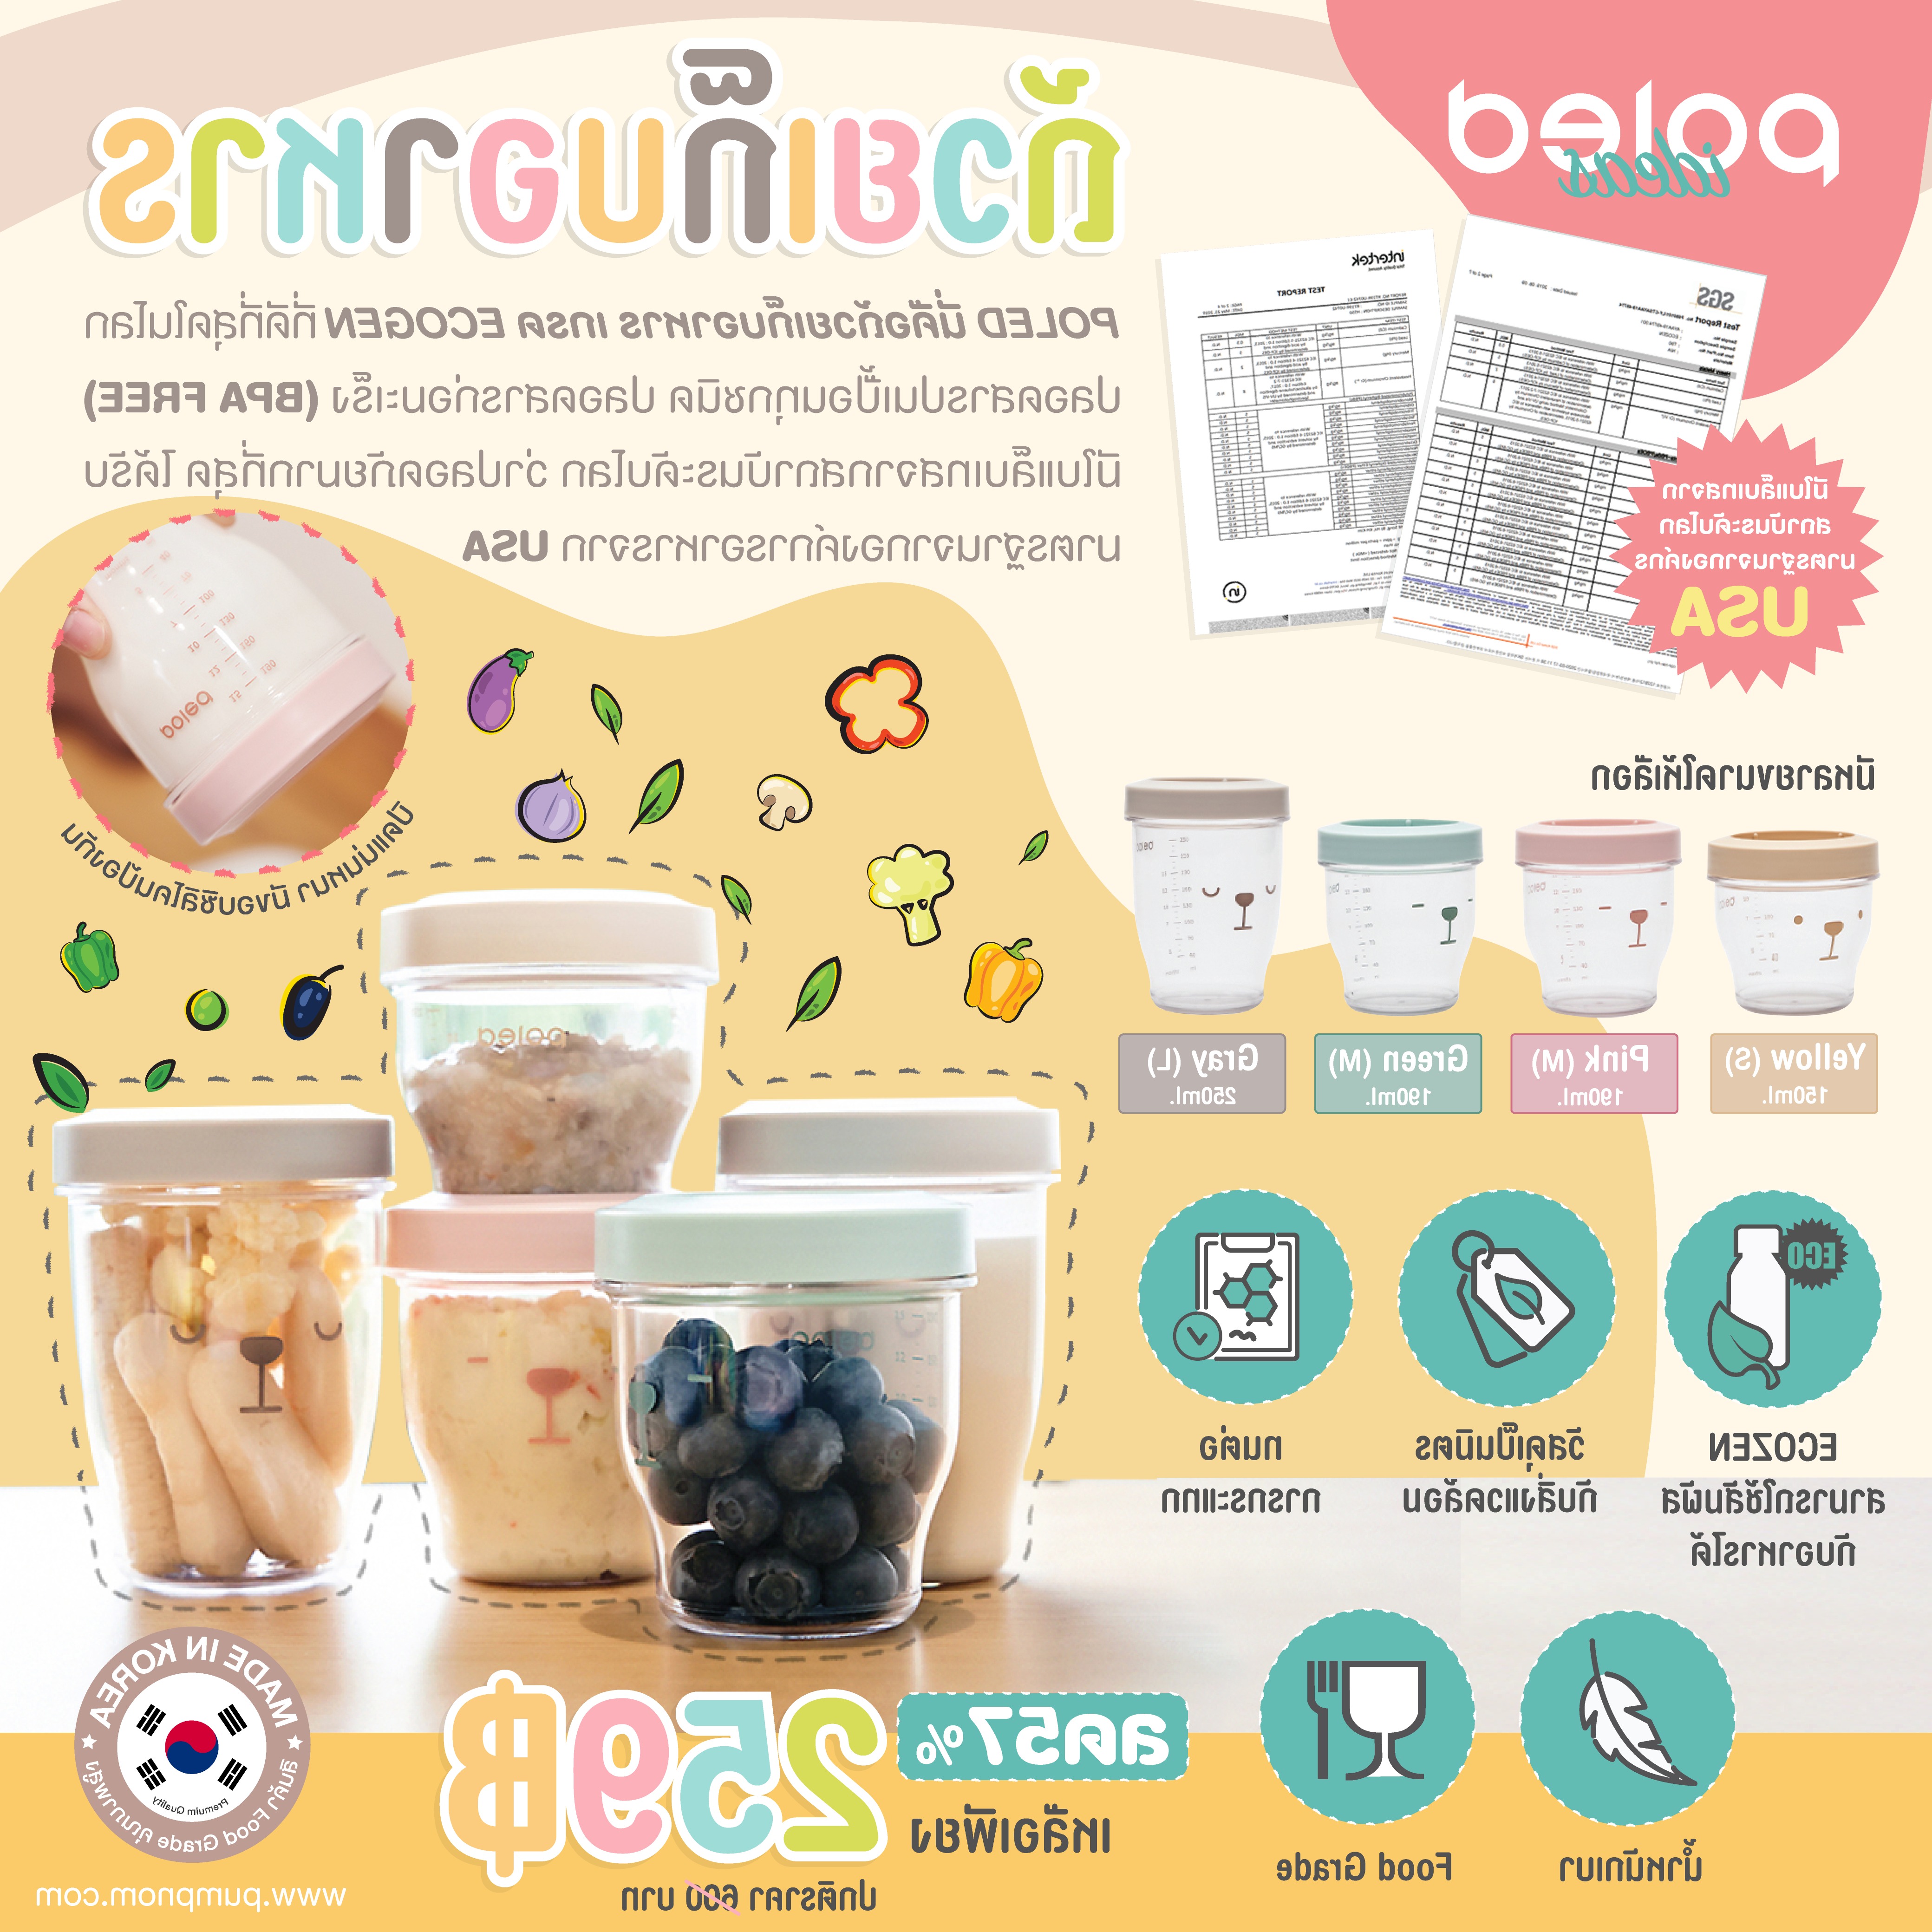 ลด57% POLED [Made in Korea] นี่คือถ้วยเก็บอาหาร เกรด ECOGEN ที่ดีที่สุดในโลก ปลอดสารปนเปื้อนทุกชนิด ปลอดสารก่อมะเร็ง (BPA FREE) มีใบแล็บเทสว่าปลอดภัย100%